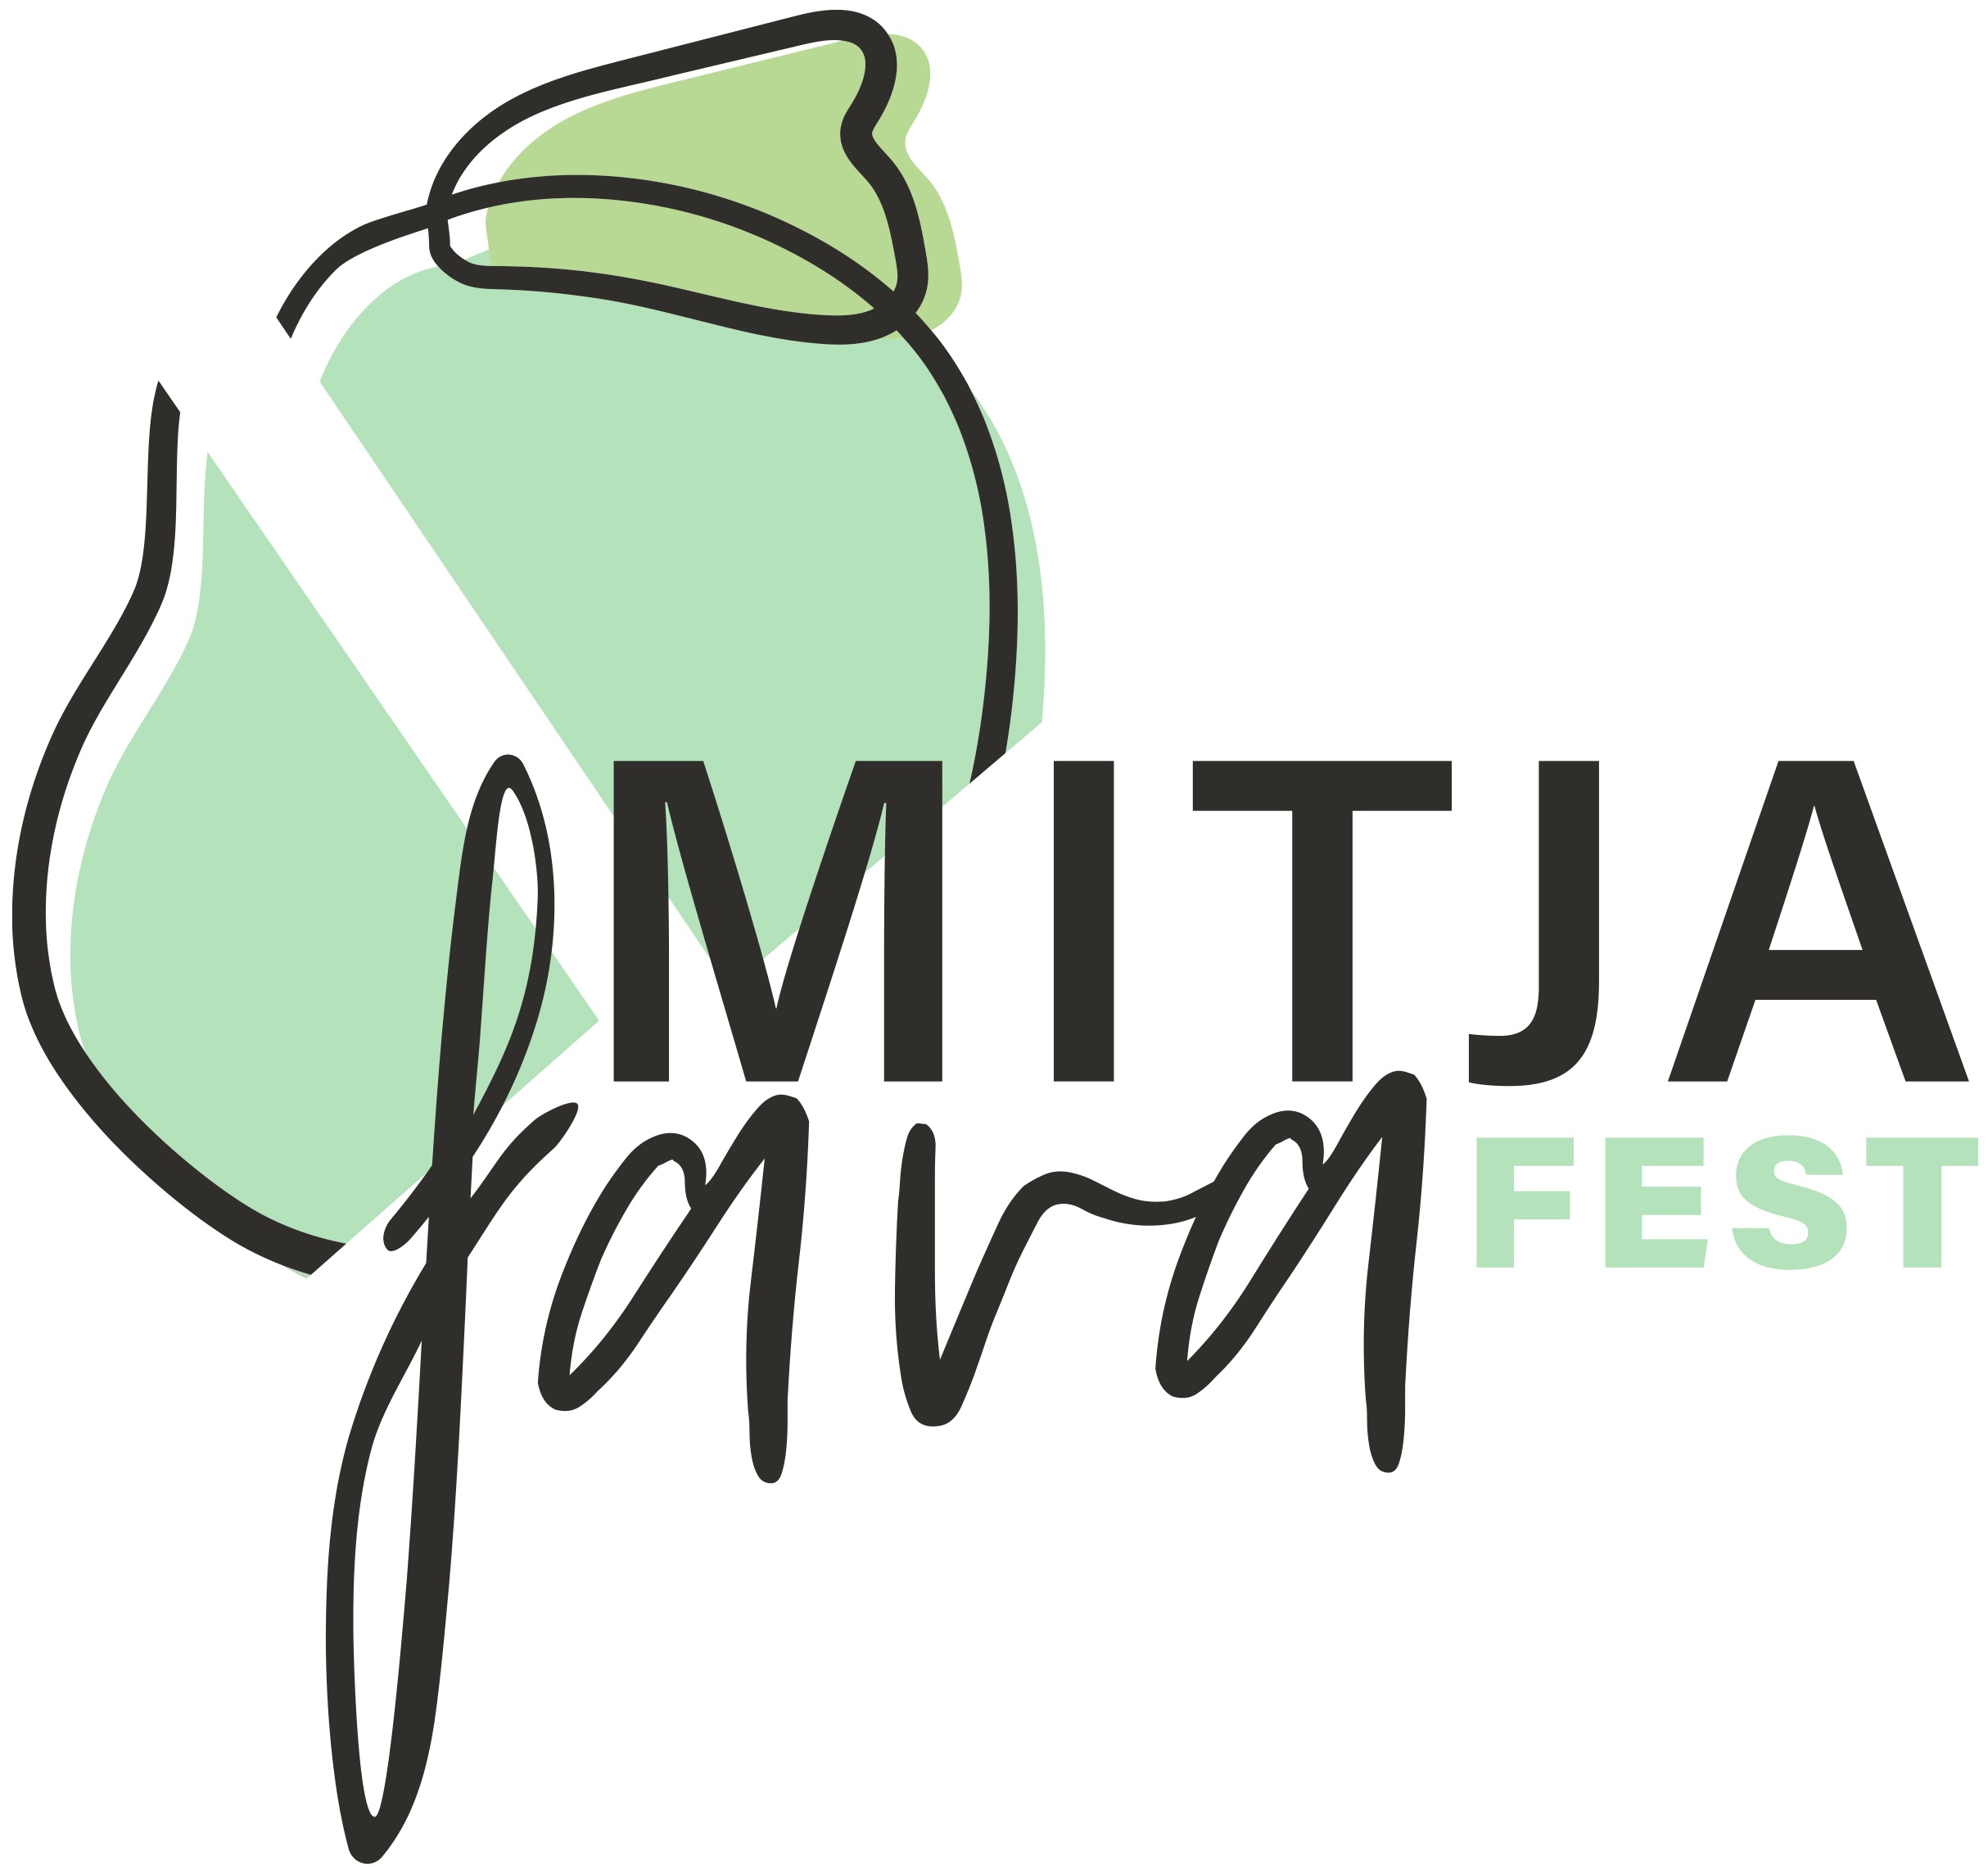 Mitja Fava Fest